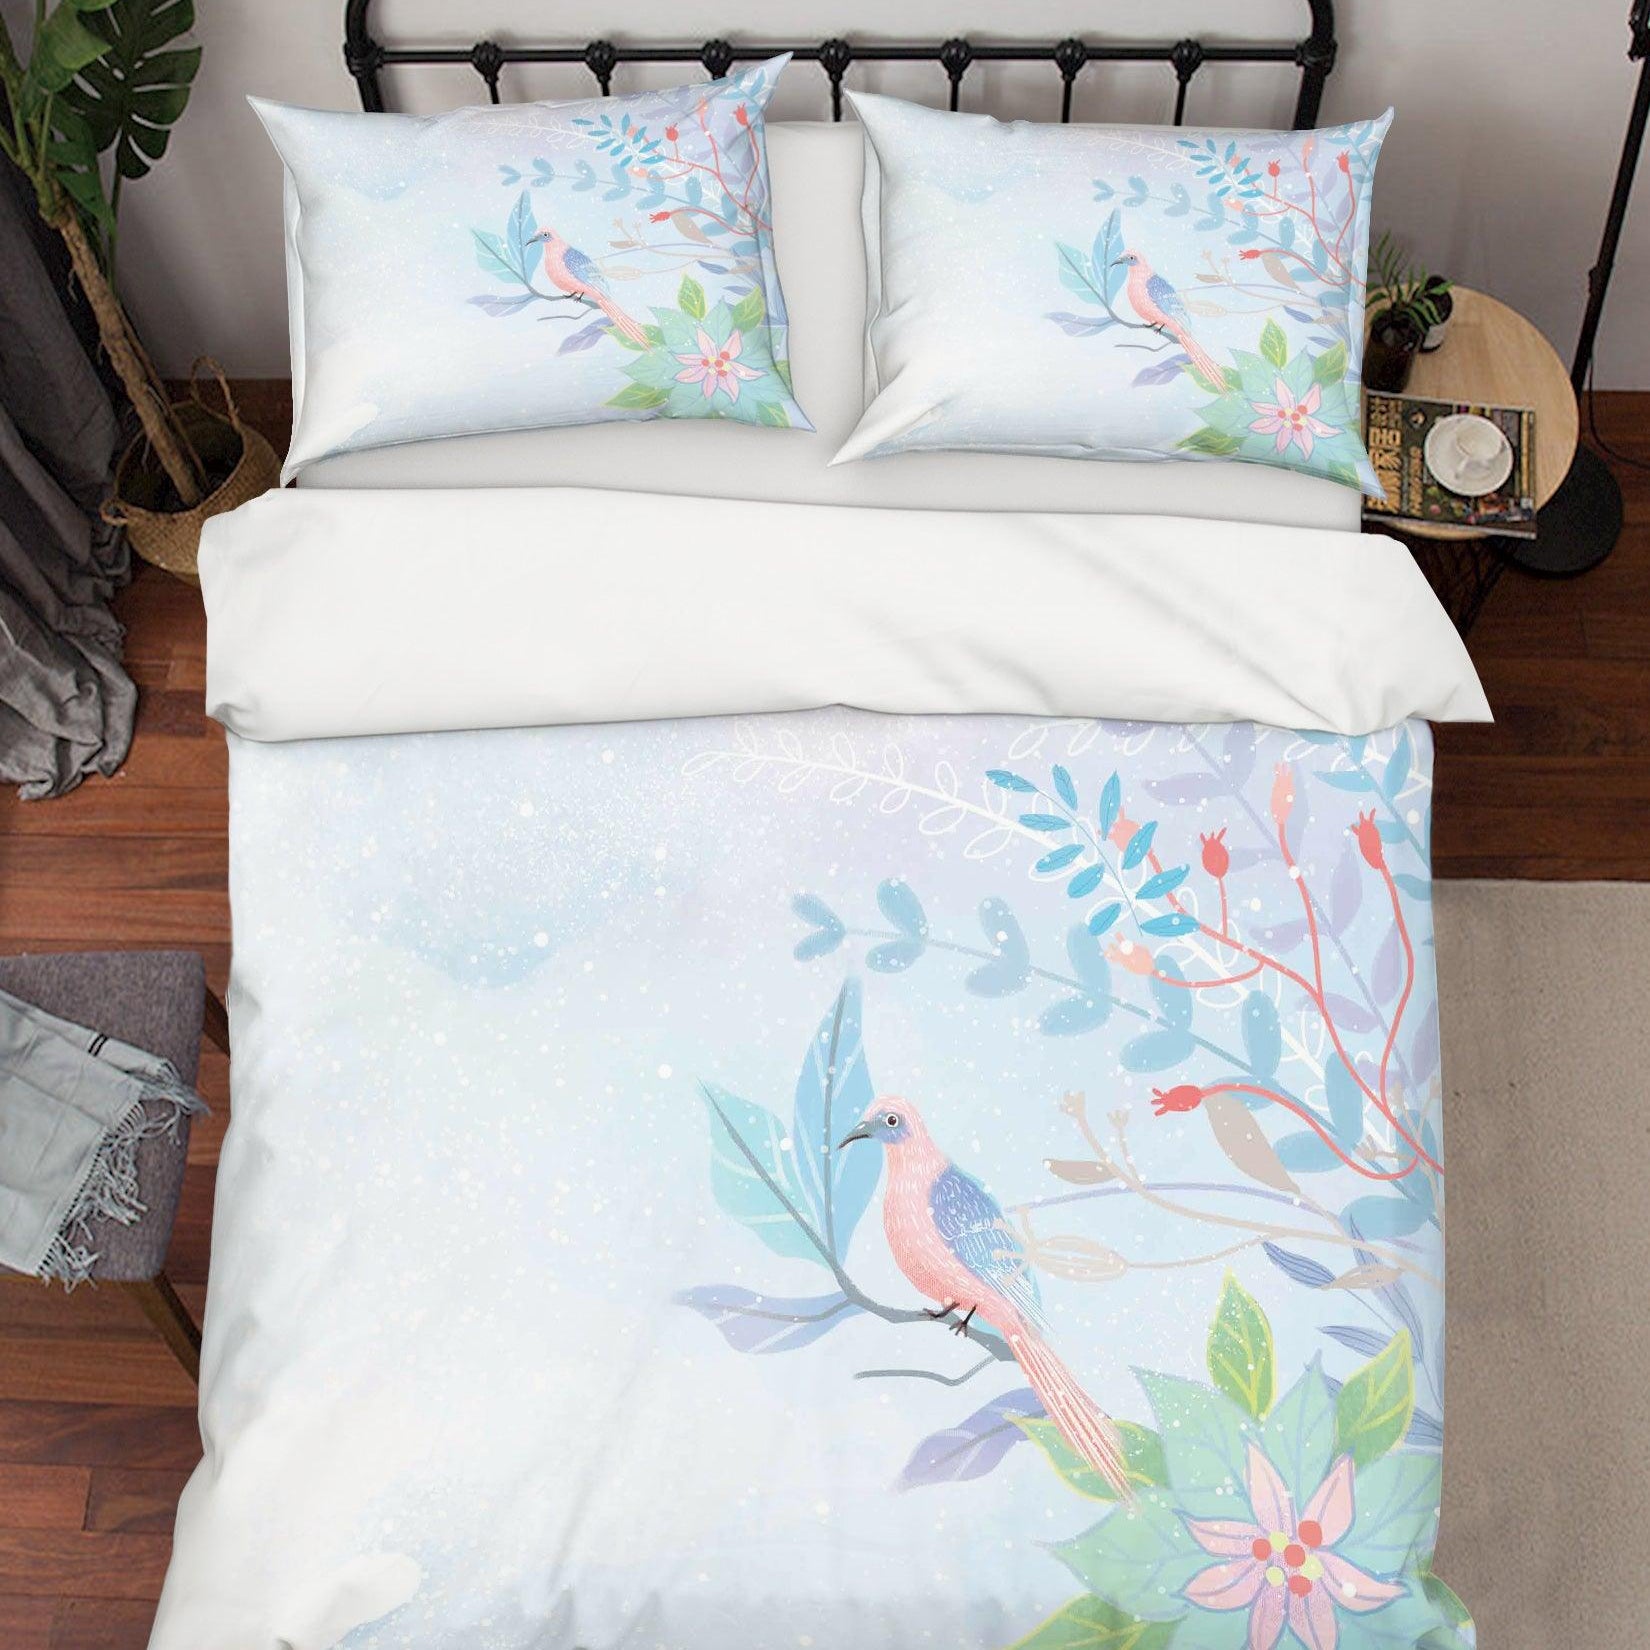 3D Watercolor Leaves Flowers Quilt Cover Set Bedding Set Duvet Cover Pillowcases A512 LQH- Jess Art Decoration